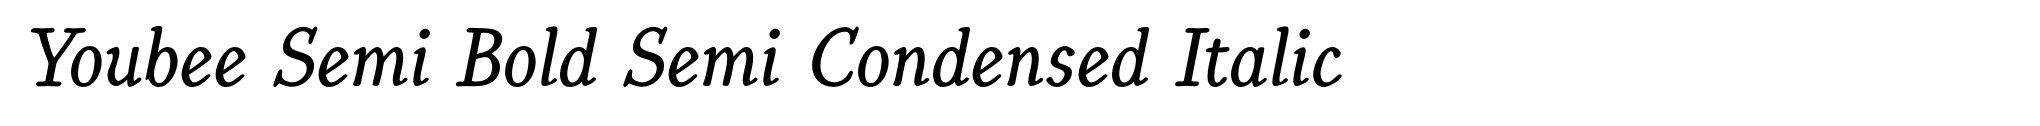 Youbee Semi Bold Semi Condensed Italic image